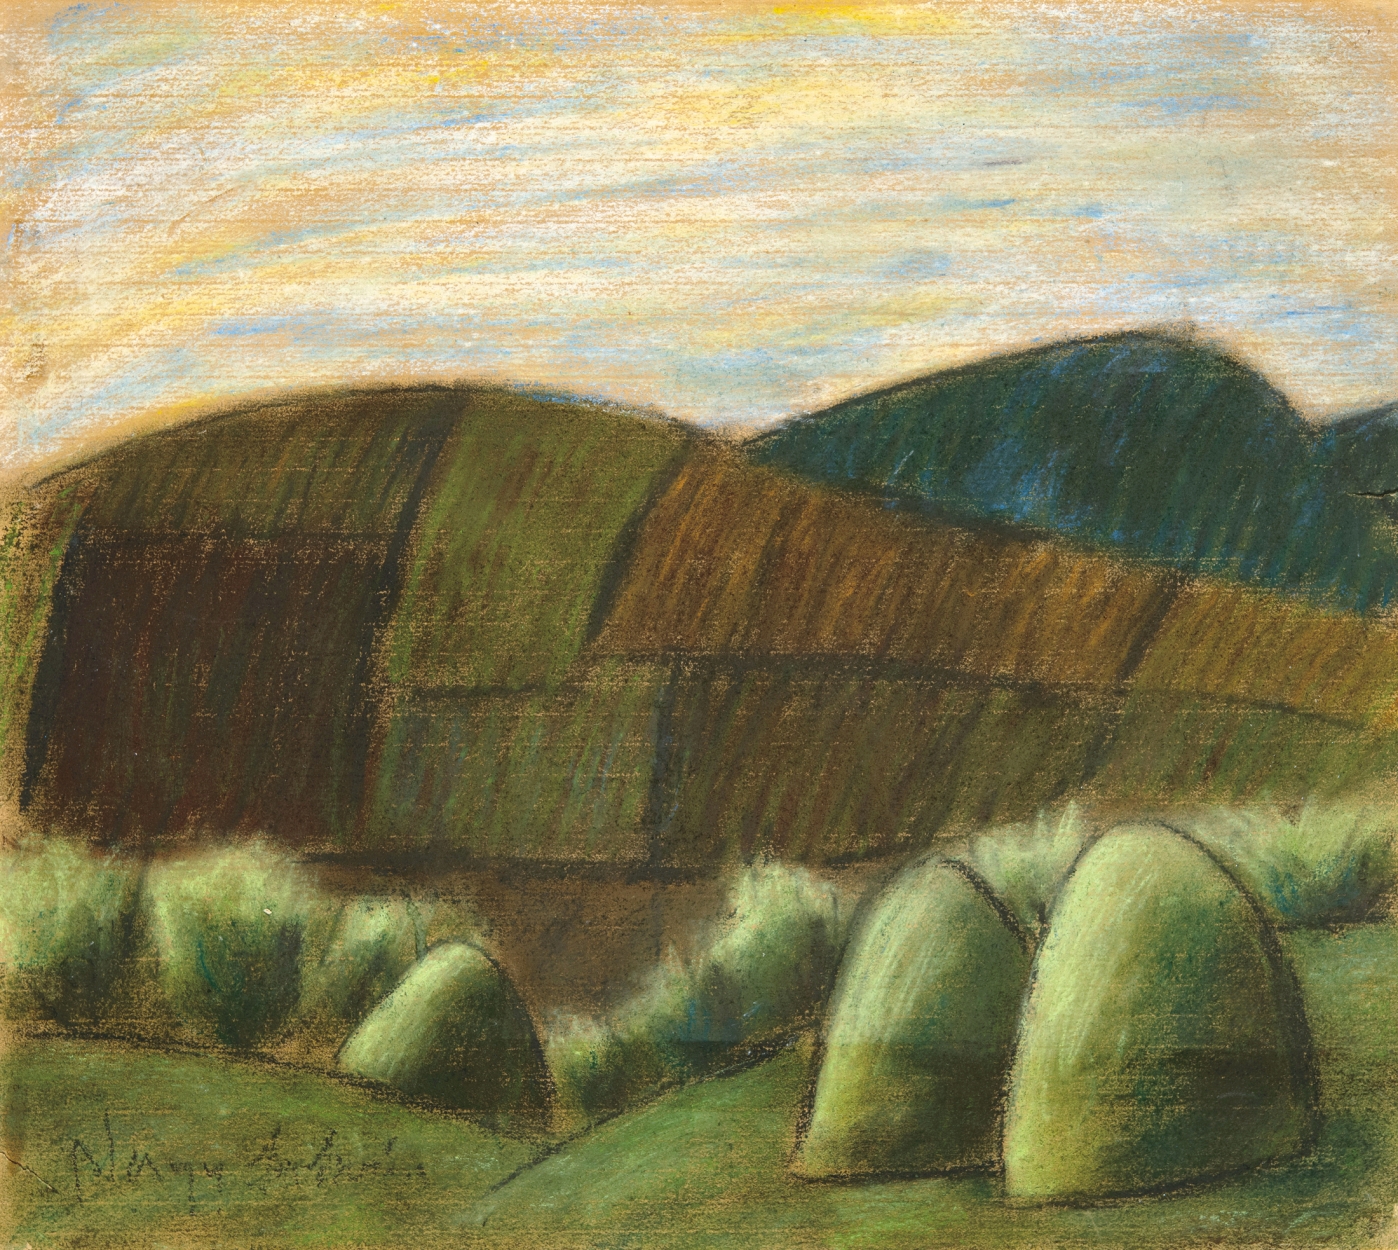 Nagy István (1873-1937) Hilly Landscape with Stacks